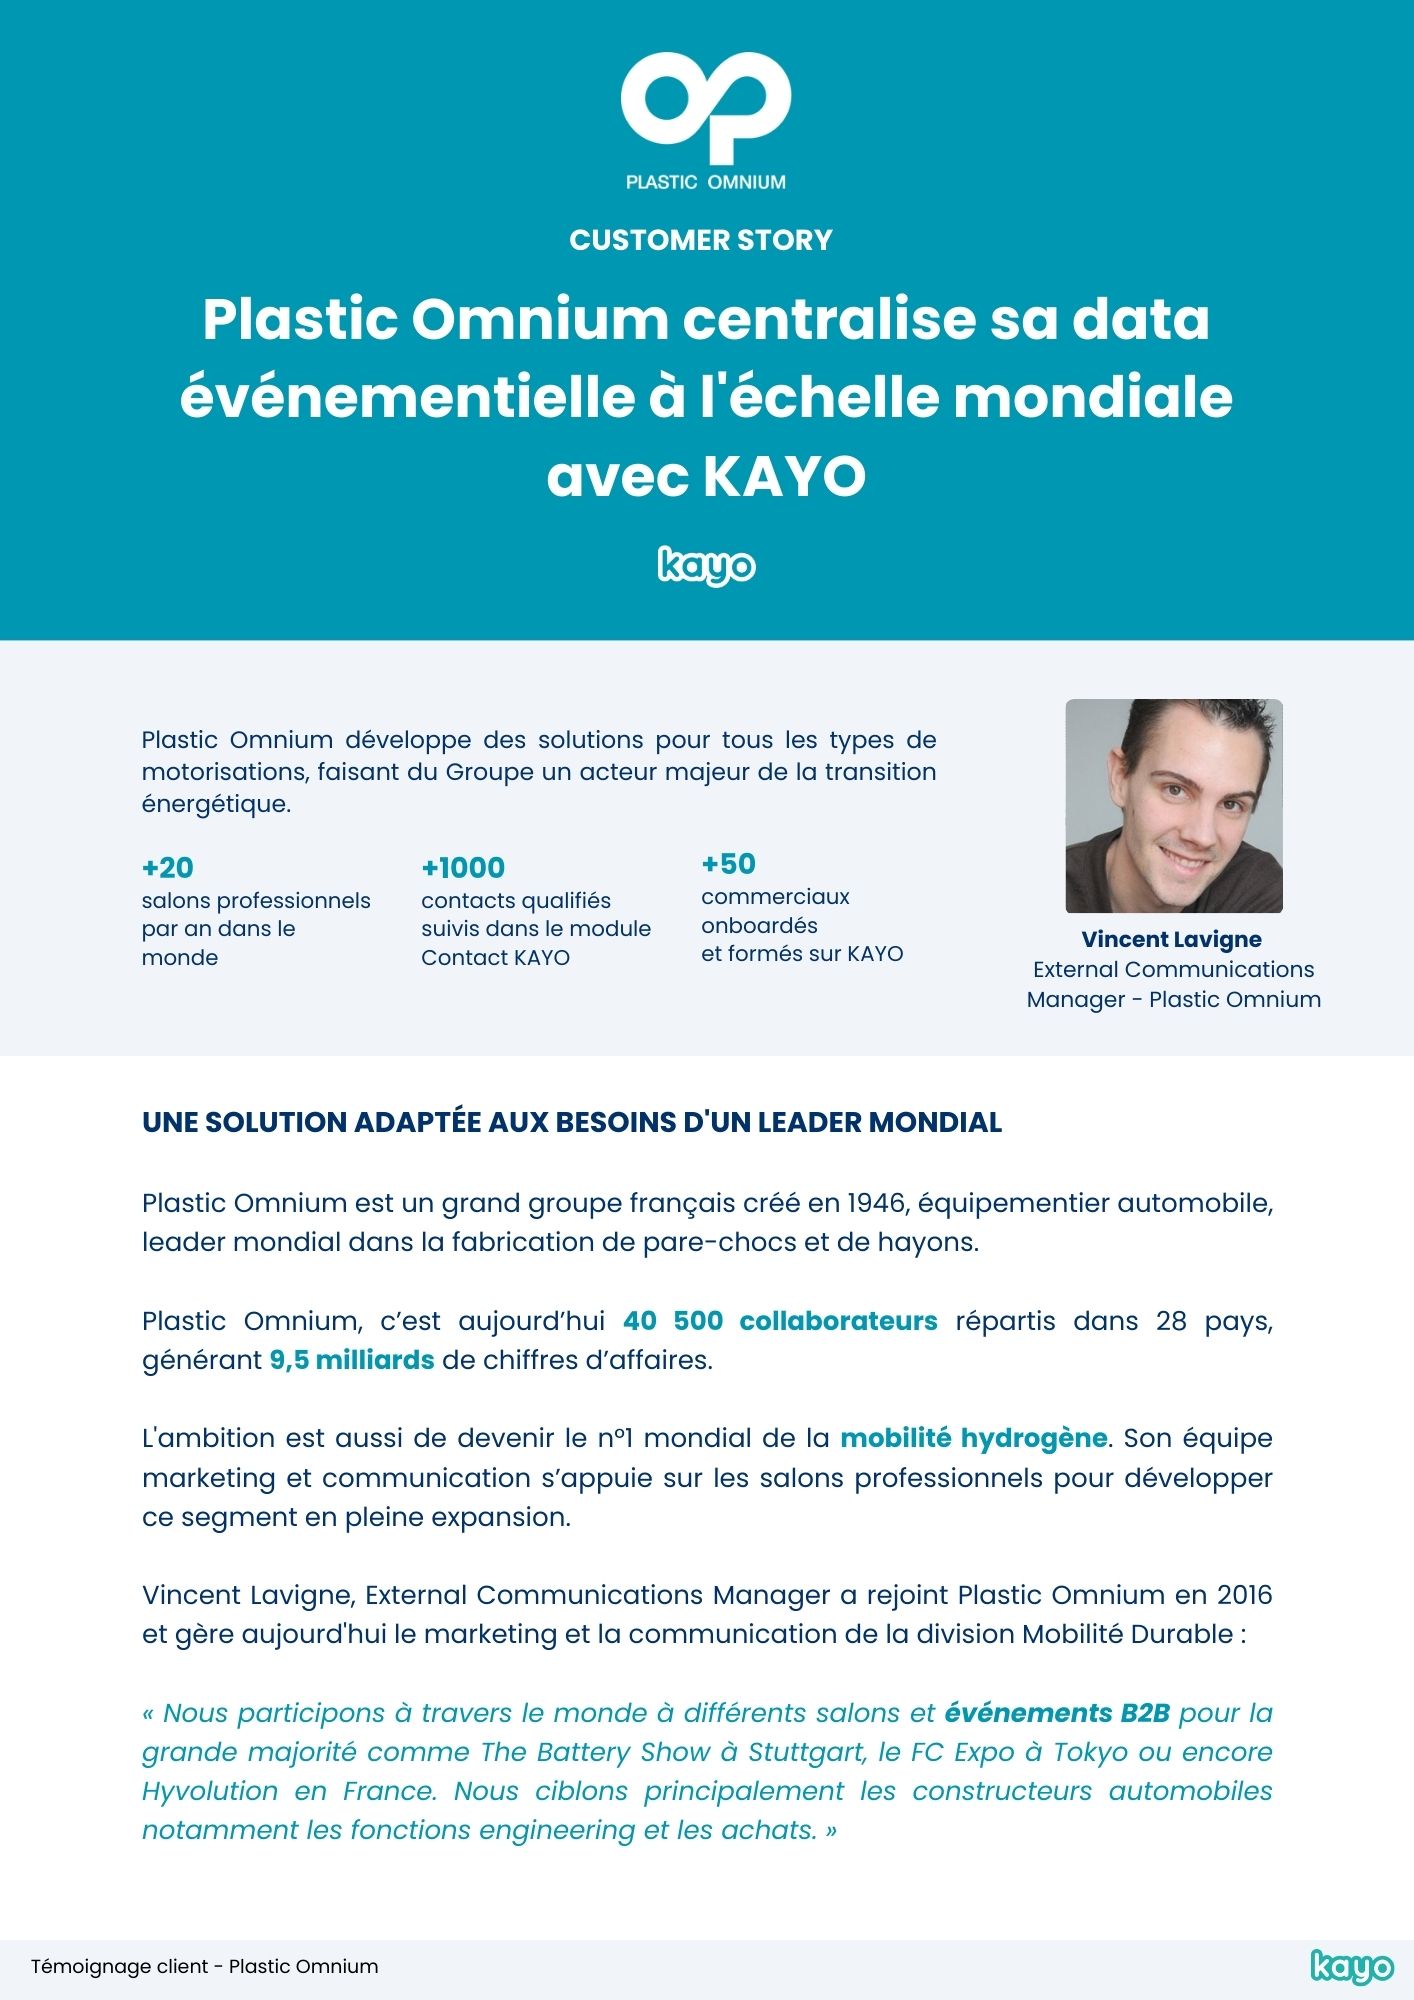 temoignage client Vincent Lavigne - Plastic Omnium